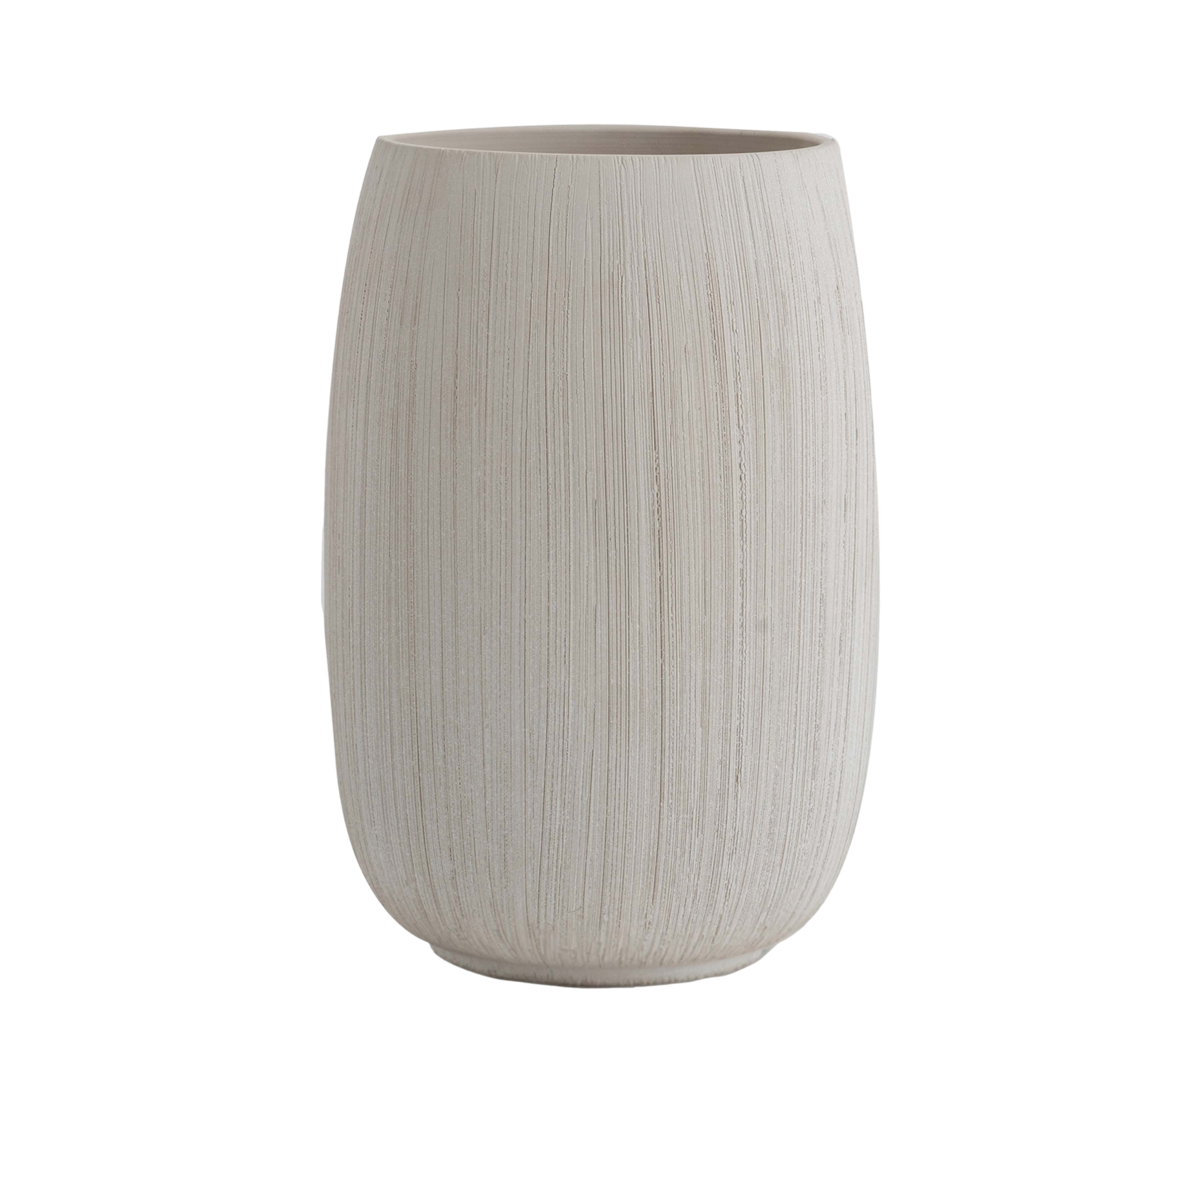 Dubai Ceramic Vase